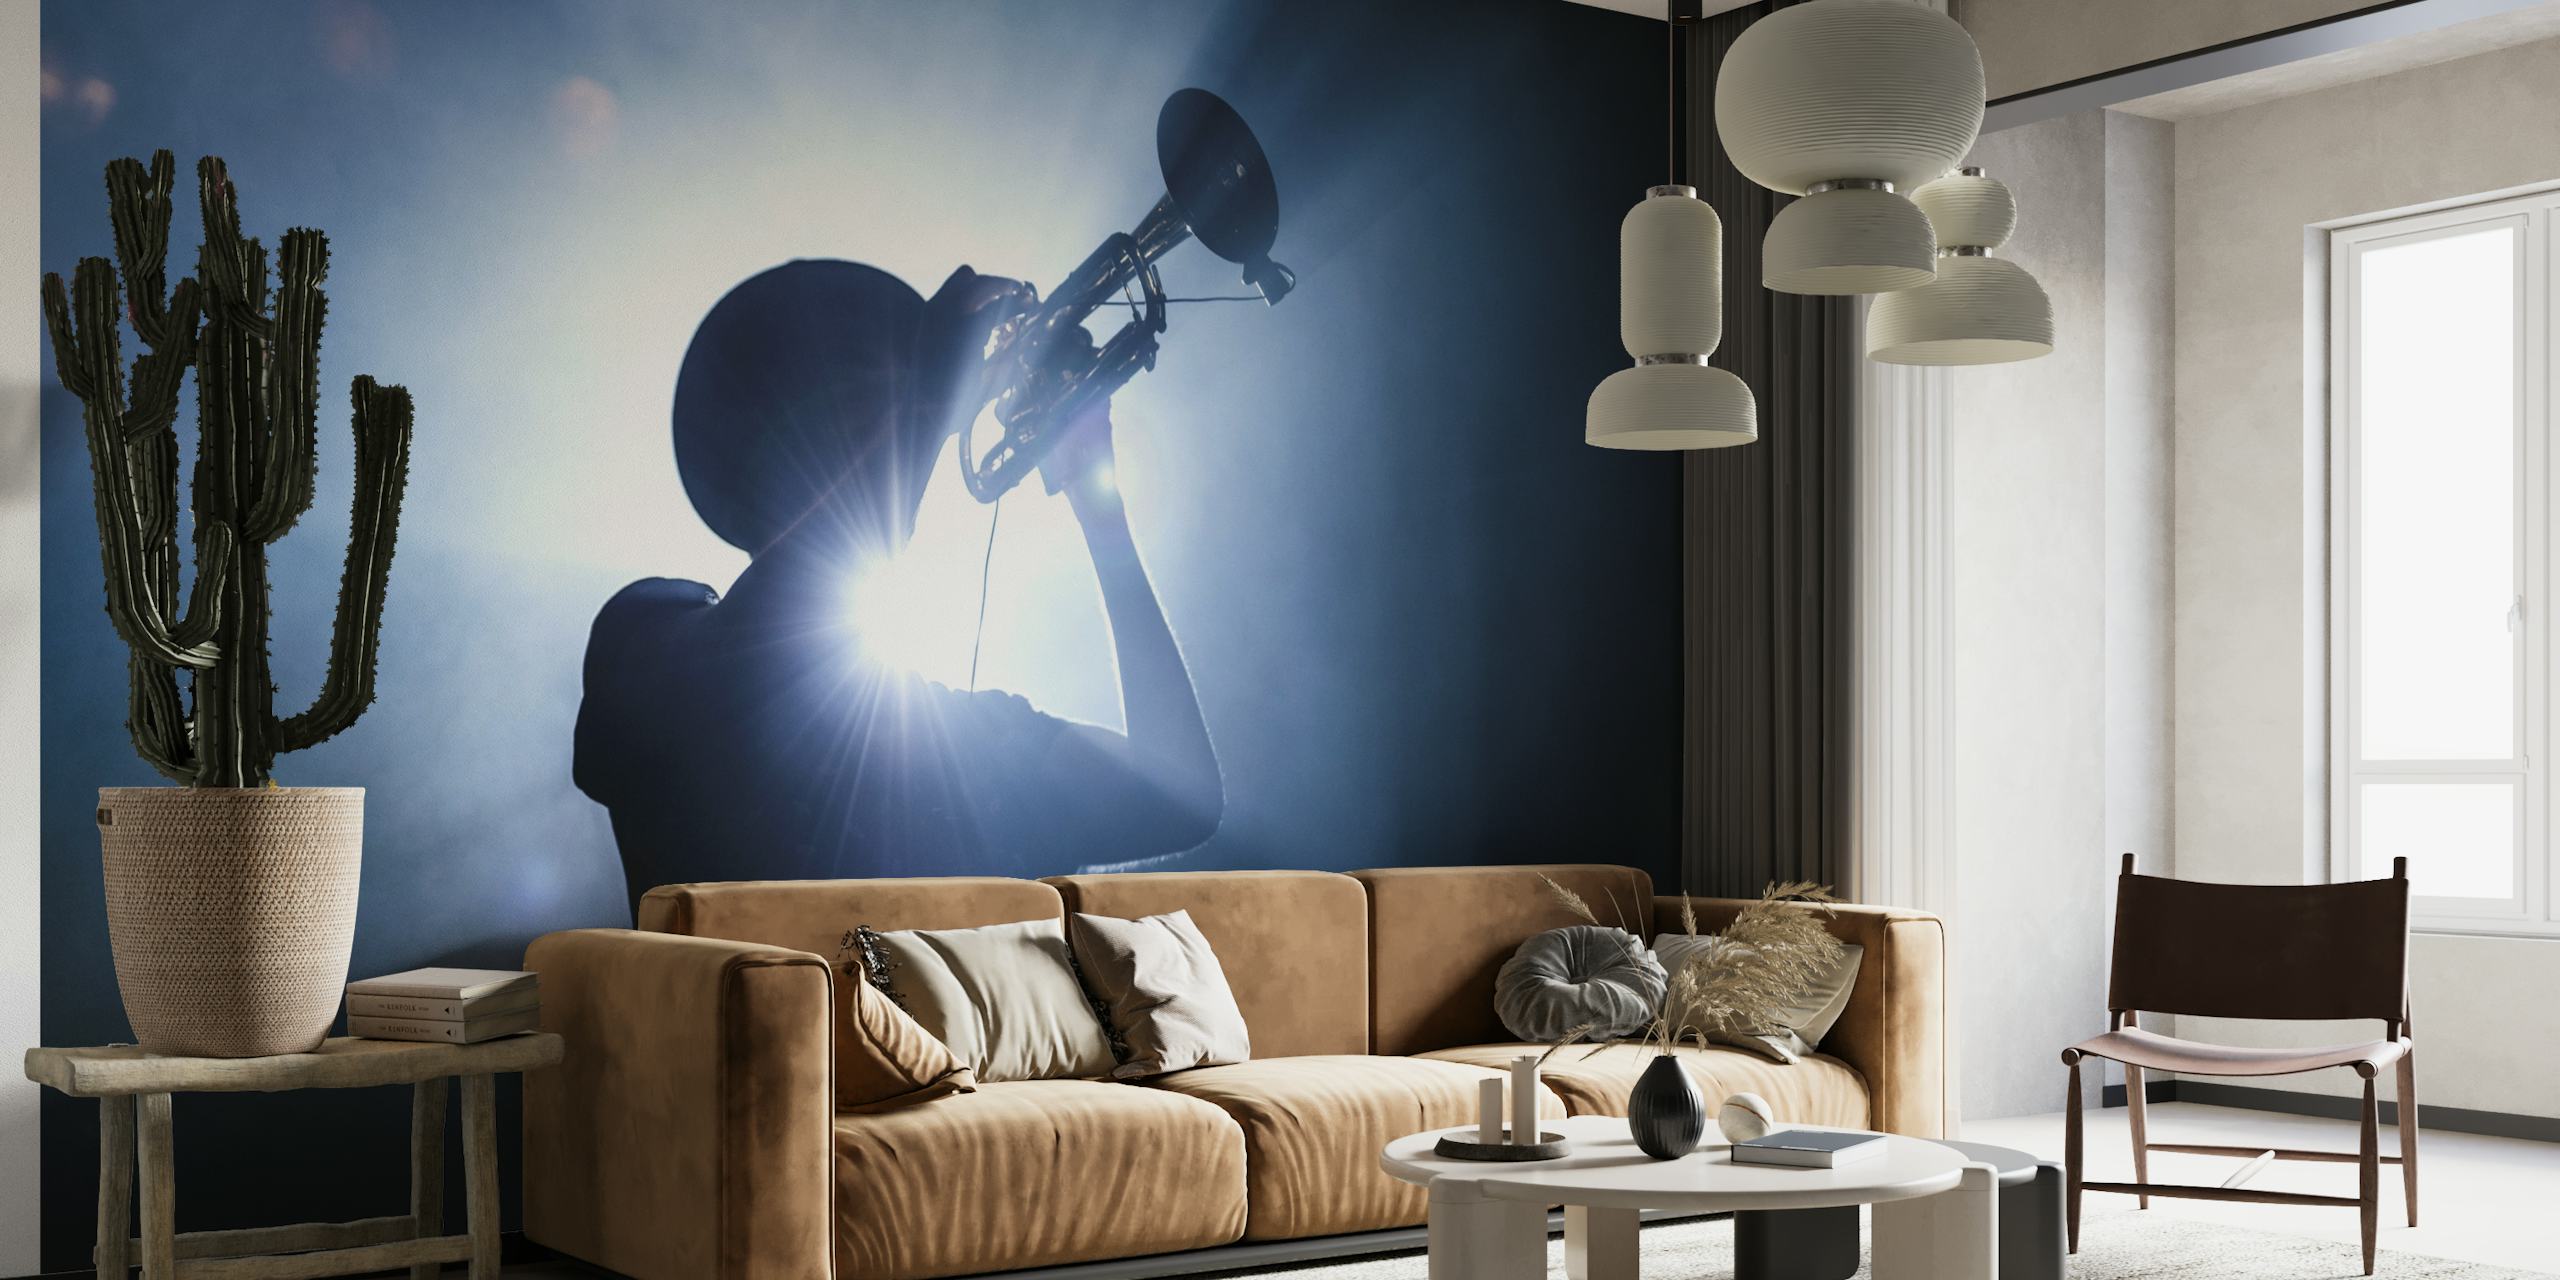 Silhouette di un trombettista su uno sfondo lunatico e illuminato, che crea un'immagine imponente su parete.